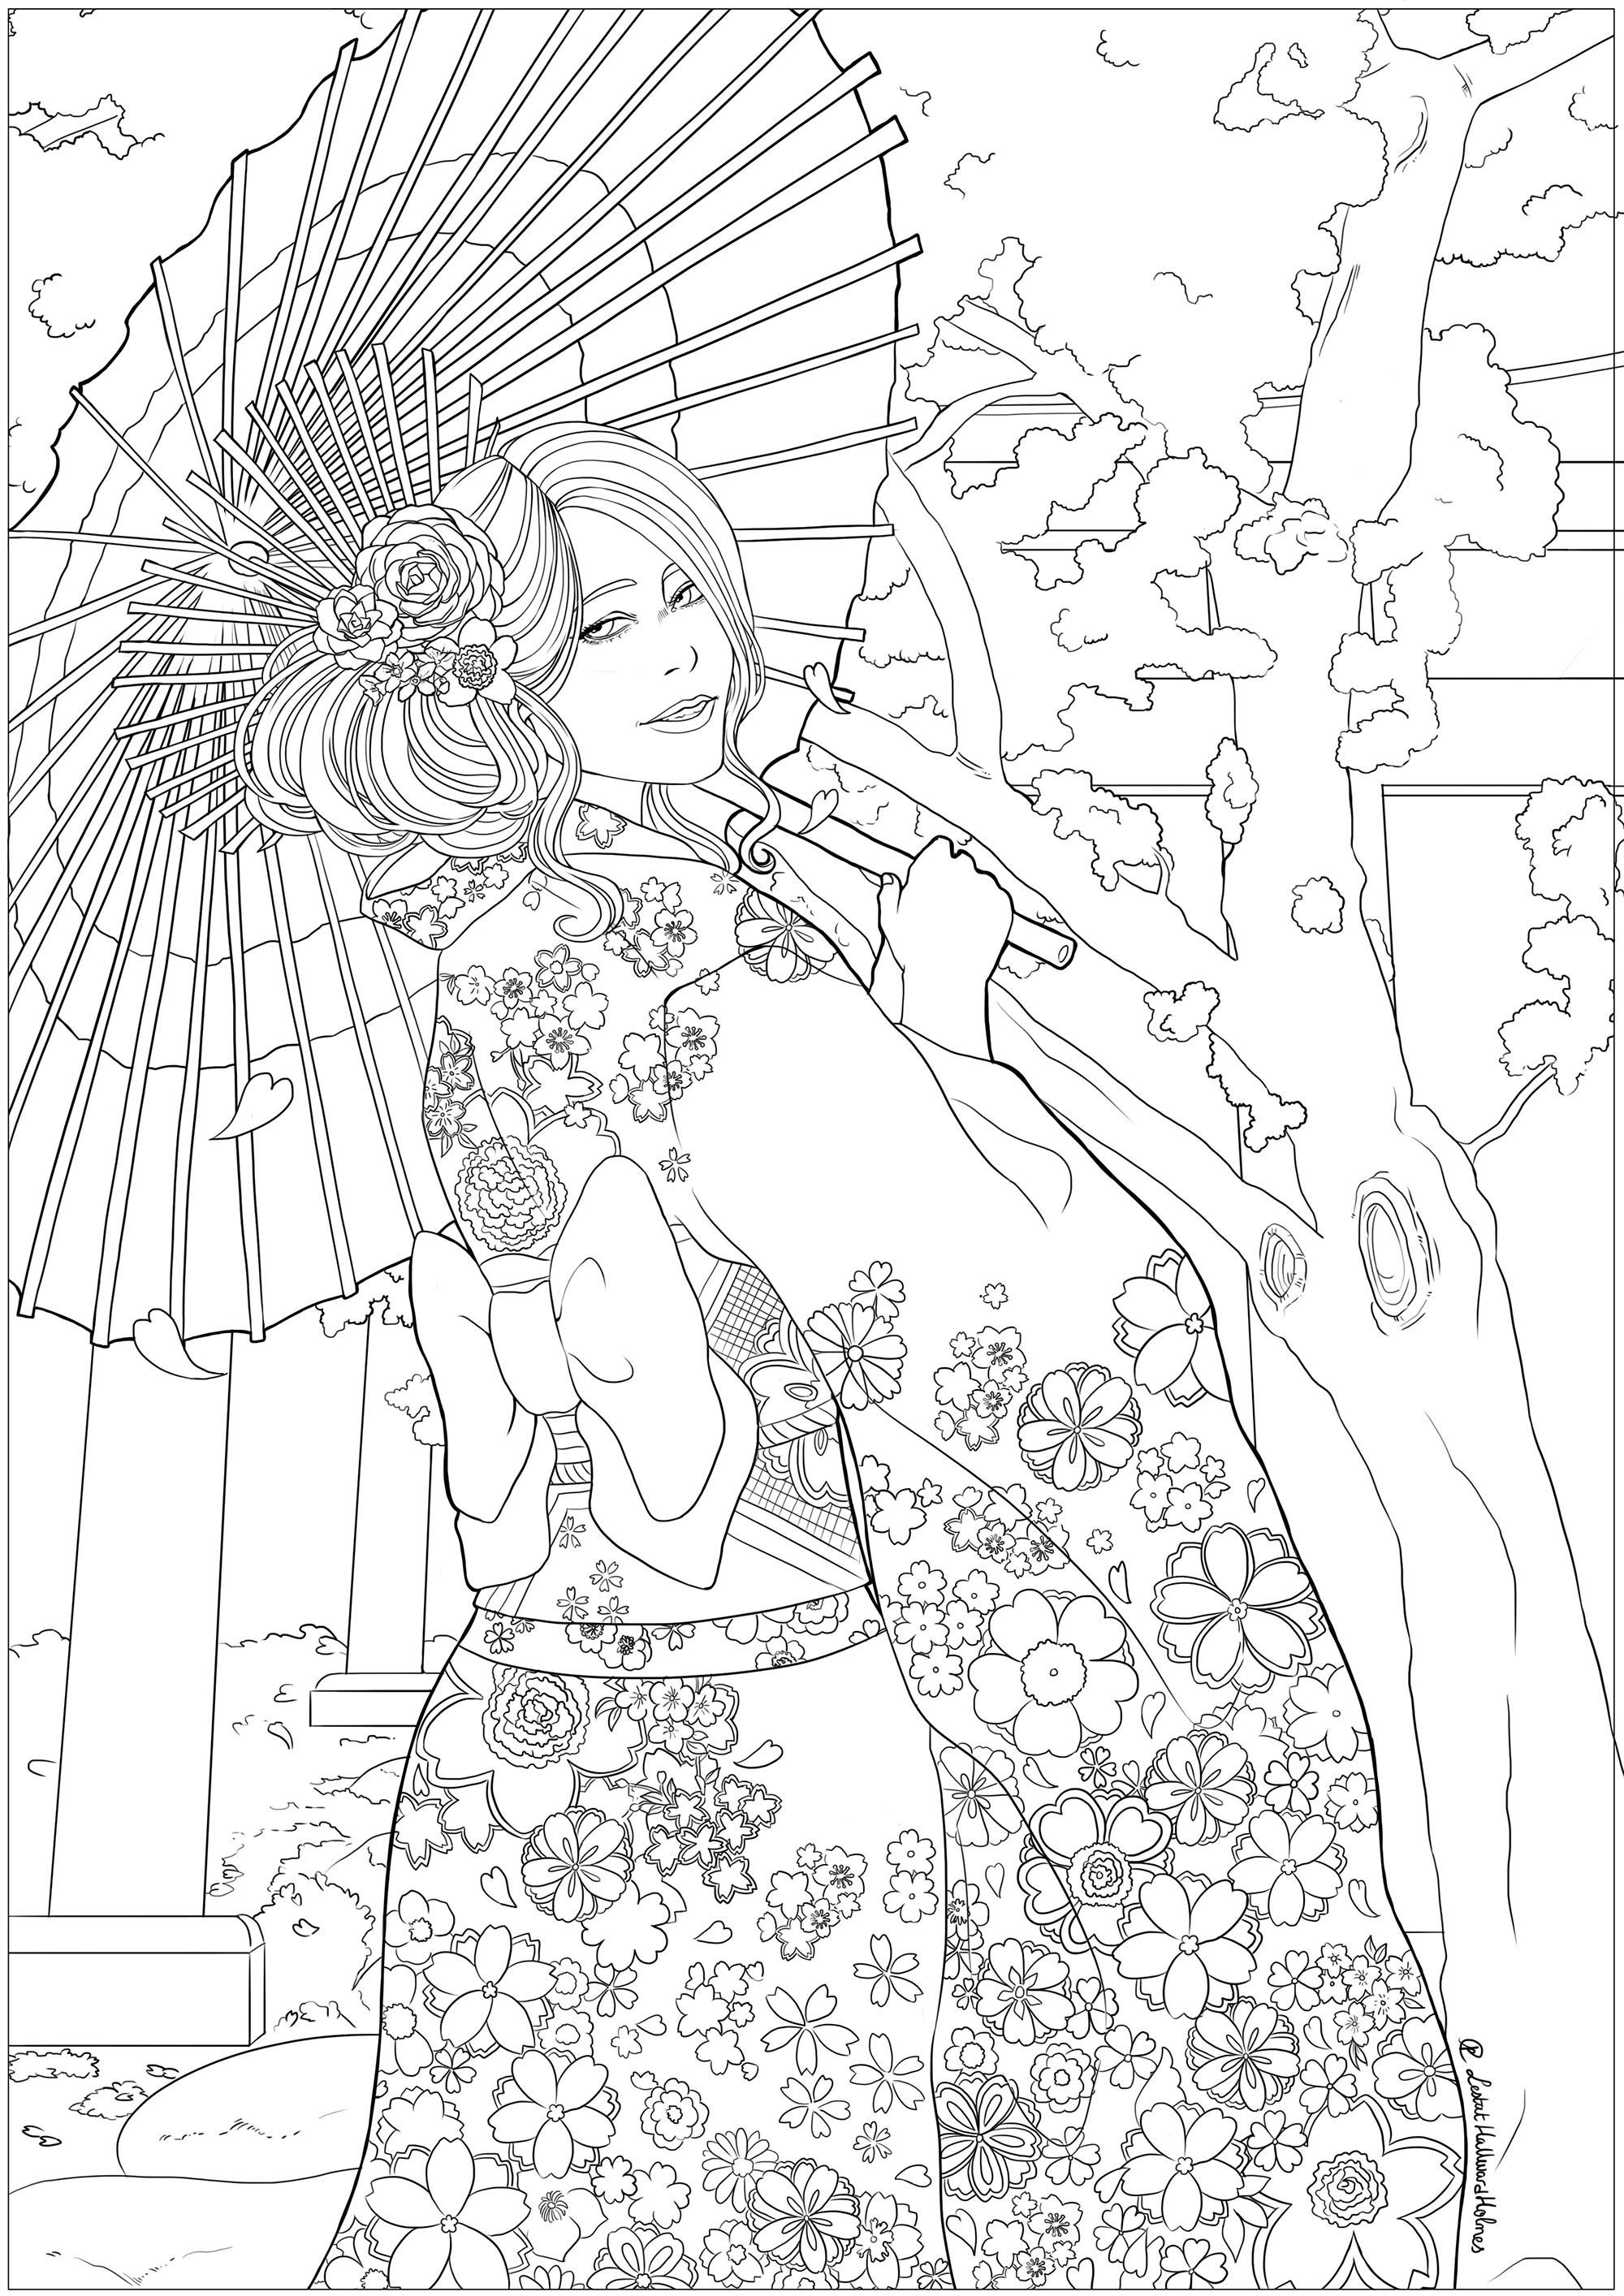 Una giovane donna elegante davanti a un tempio e ai fiori di ciliegio, con indosso il suo miglior yukata. Disegno che celebra l'Hanami, la festa della primavera giapponese, Artista : Lestat Hallward Holmes